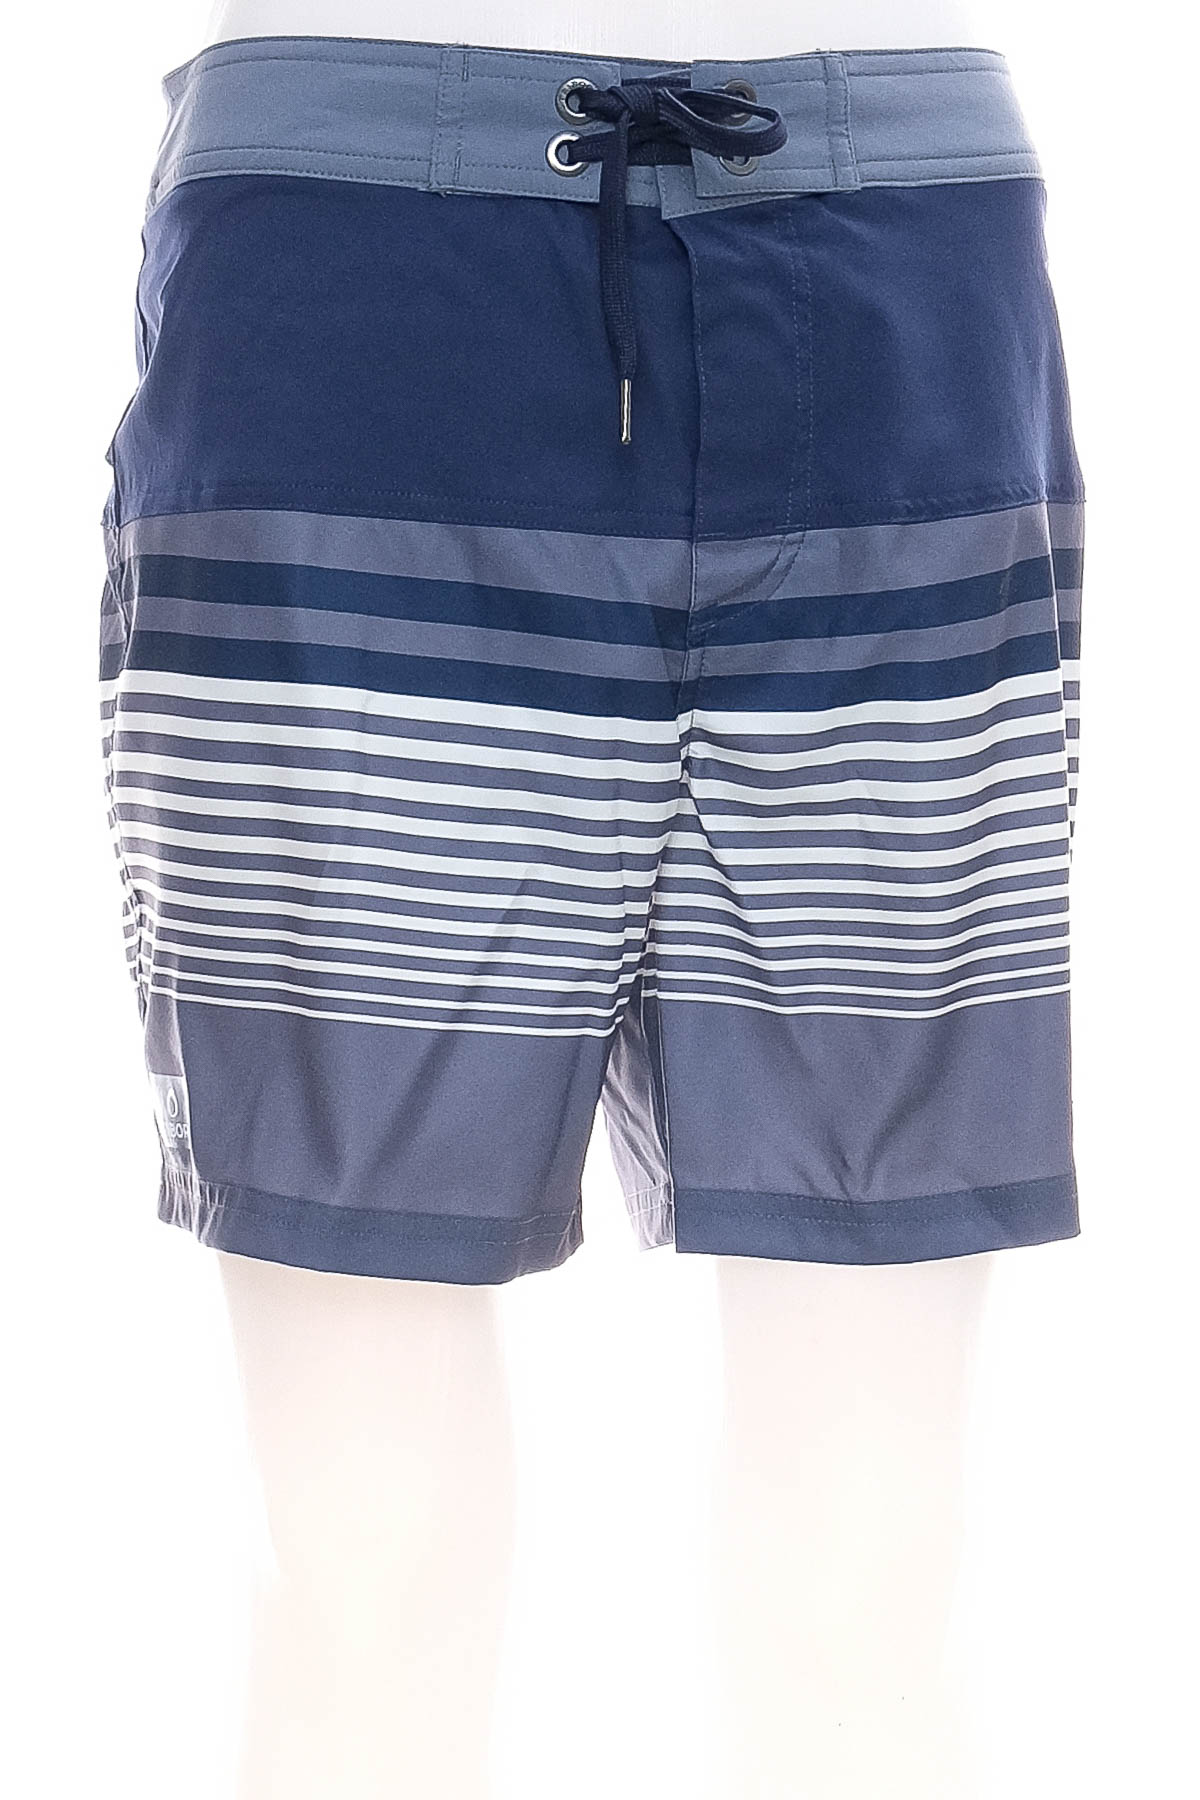 Men's shorts - Tribord - 0